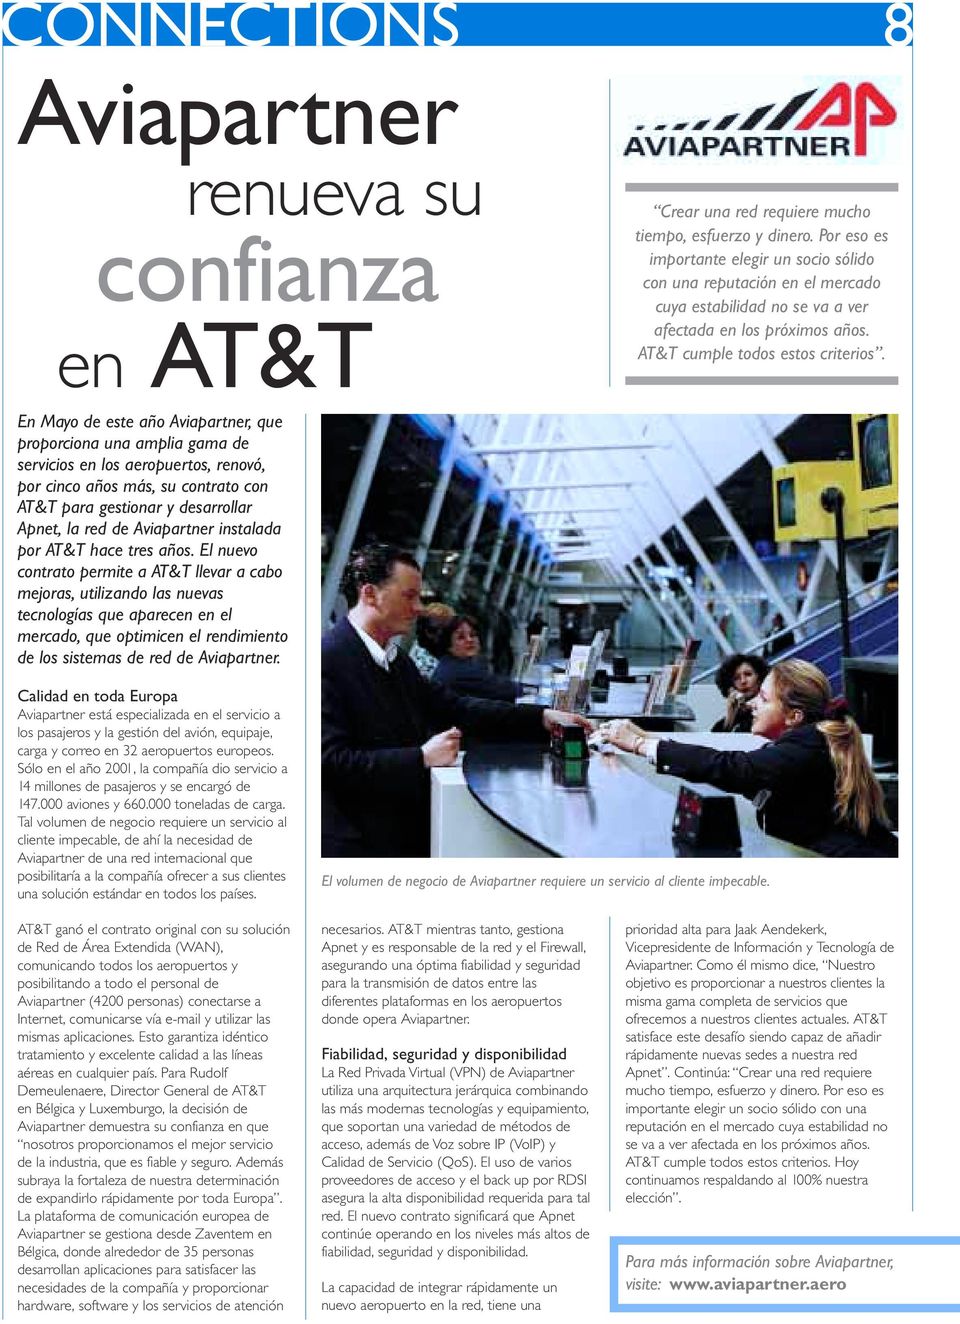 En Mayo de este año Aviapartner, que proporciona una amplia gama de servicios en los aeropuertos, renovó, por cinco años más, su contrato con AT&T para gestionar y desarrollar Apnet, la red de